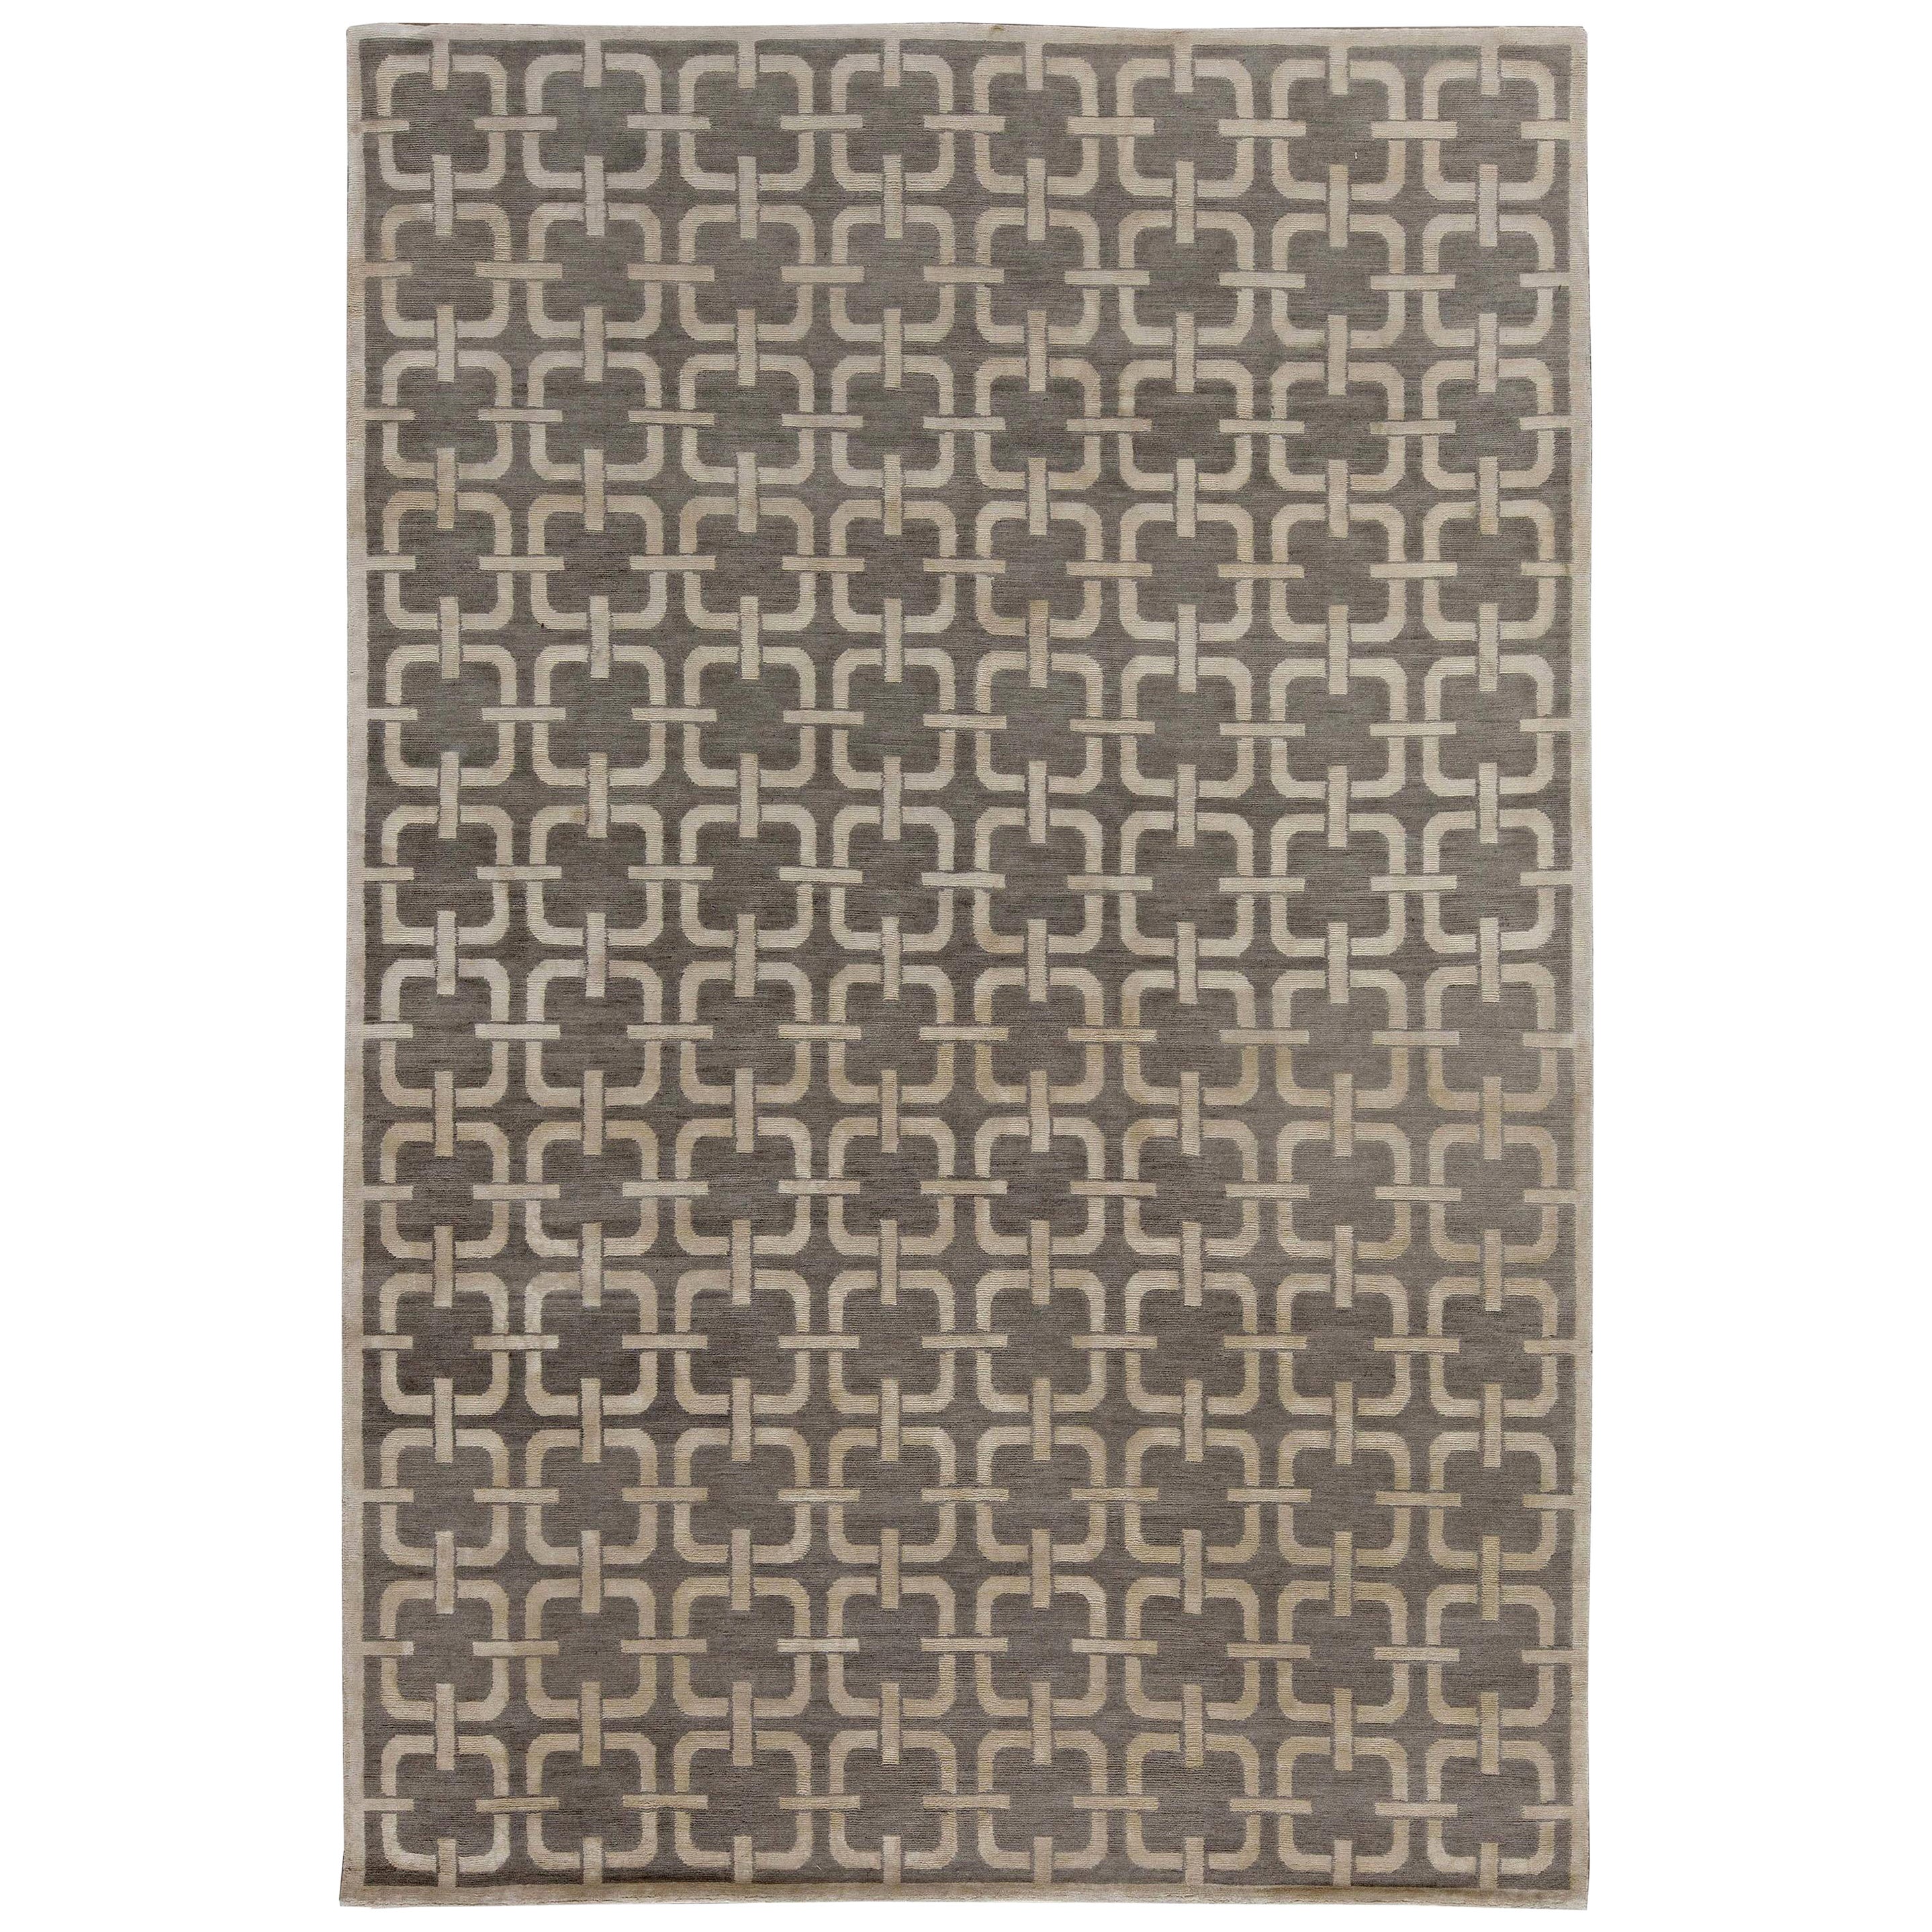 Tapis contemporain à motifs géométriques gris et beige par Doris Leslie Blau